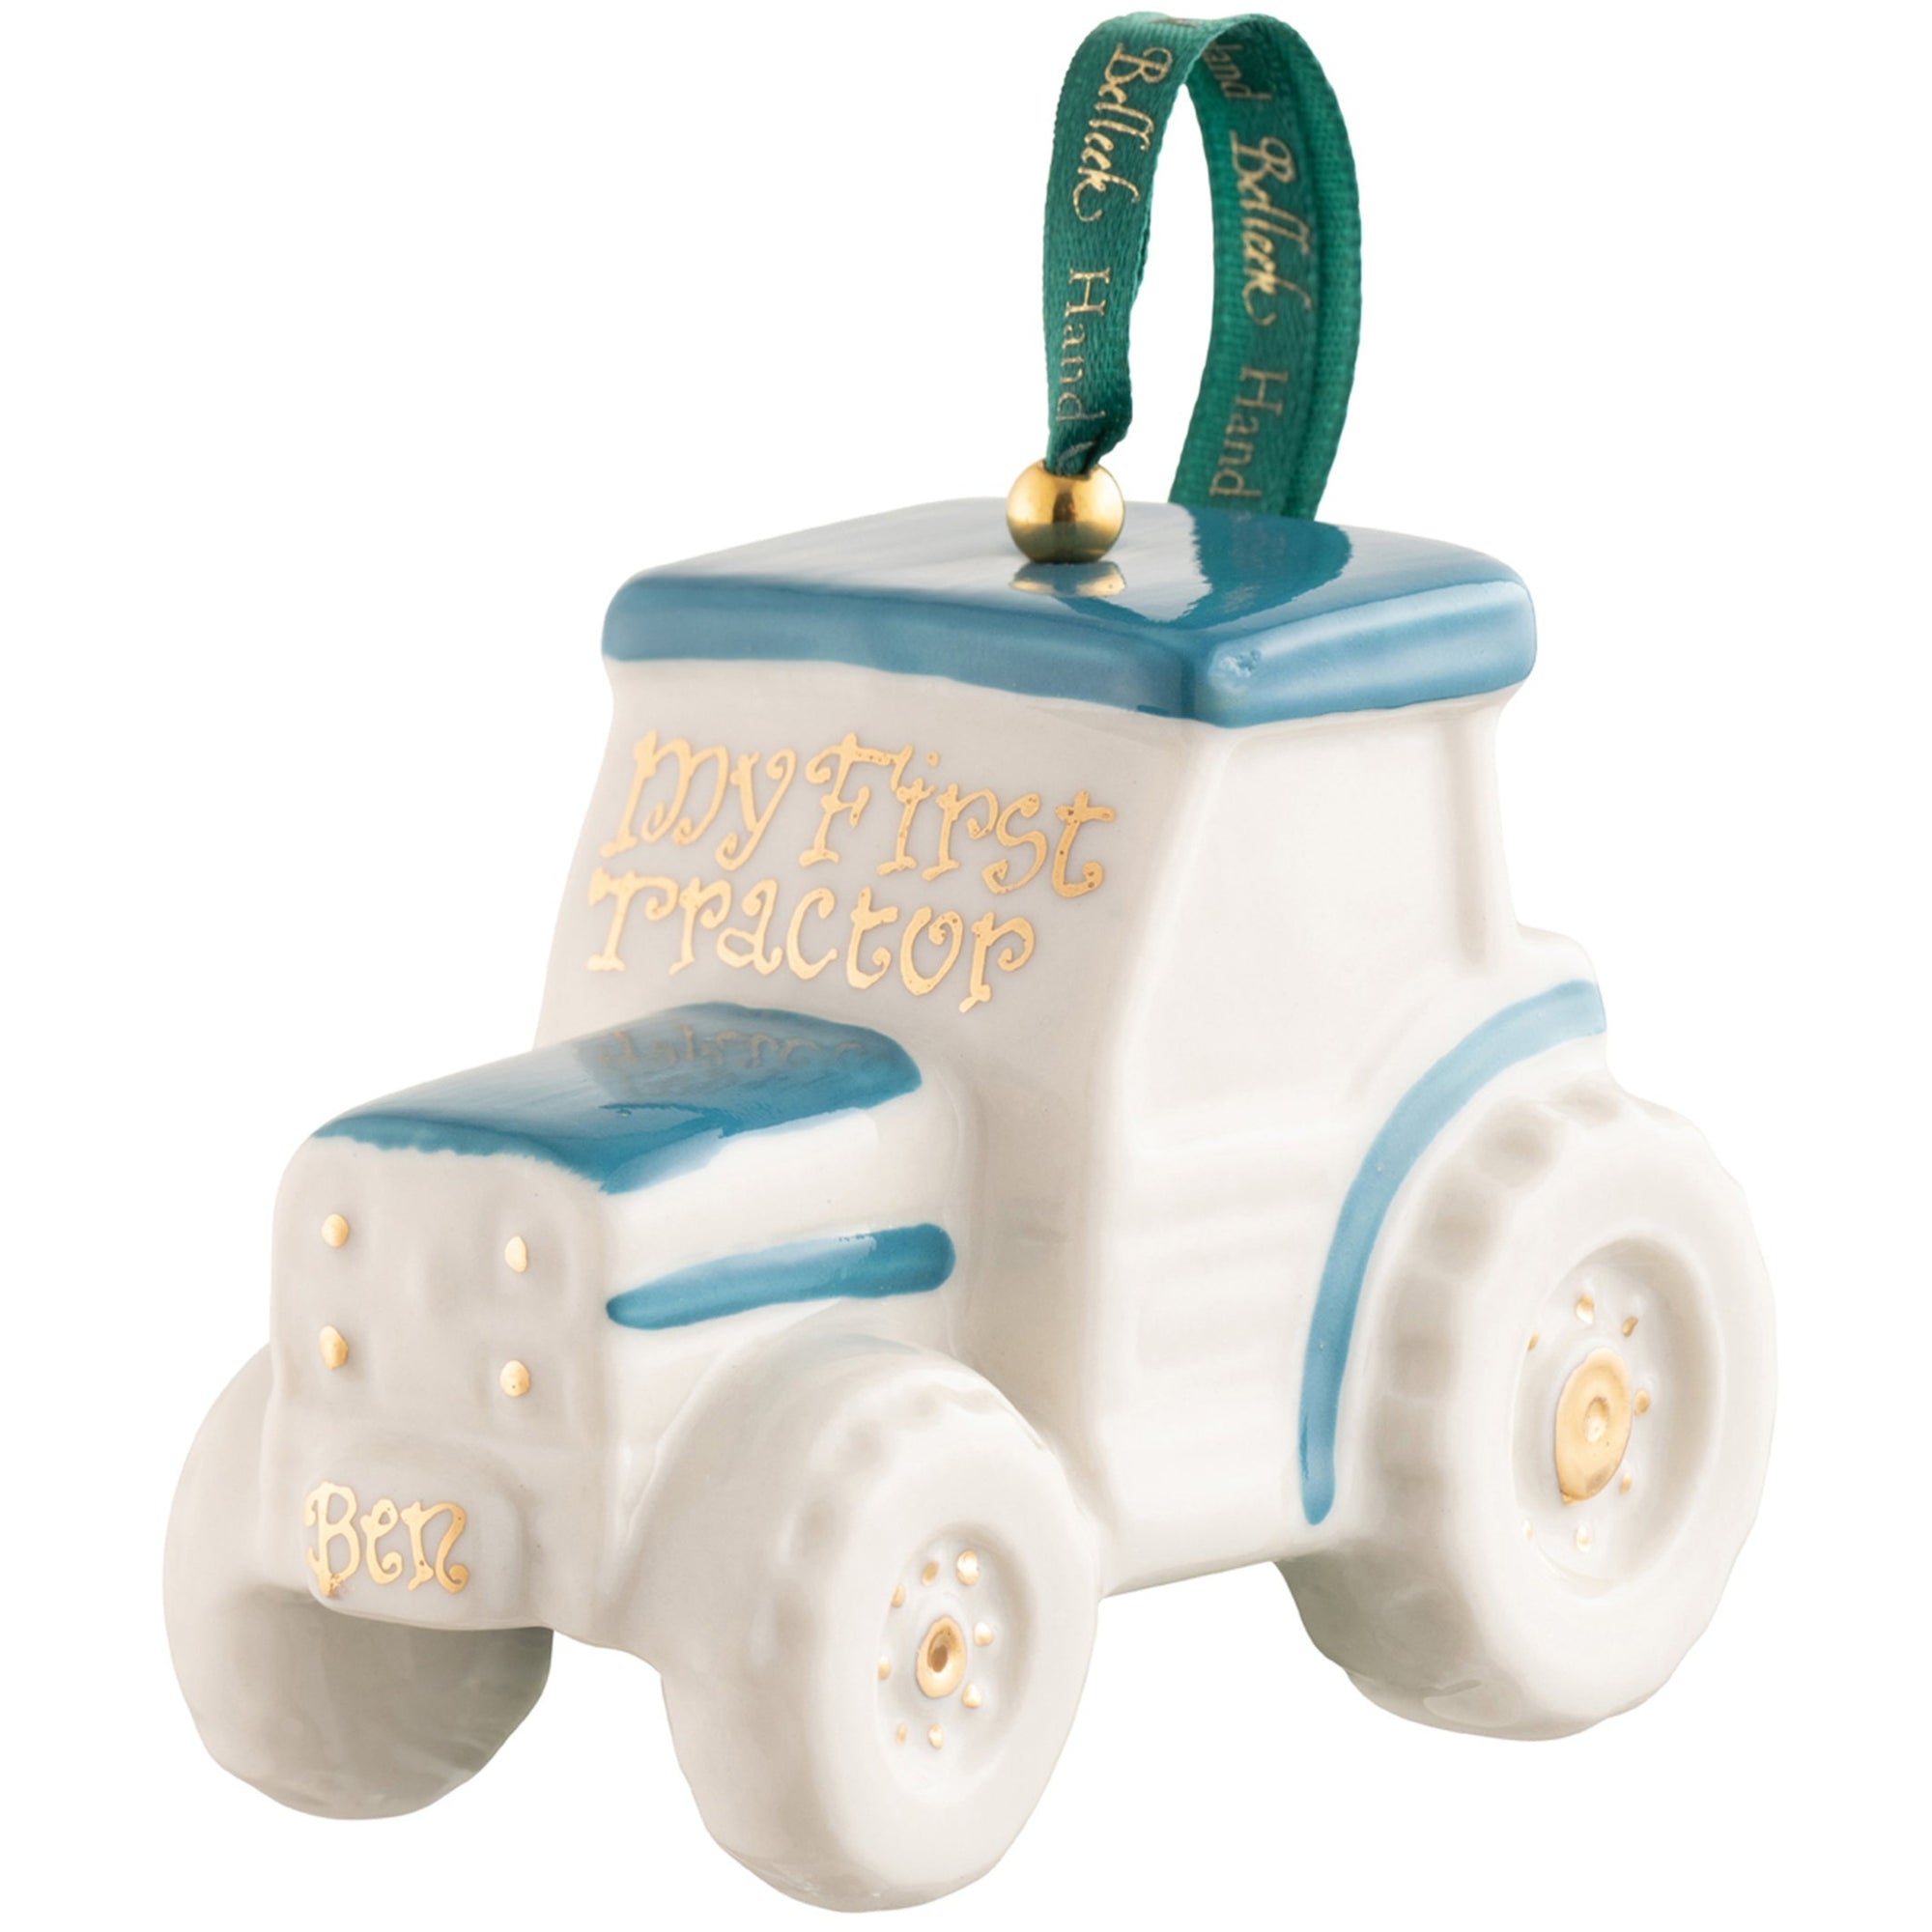 Belleek Classic Blue Tractor Ornament: 37623